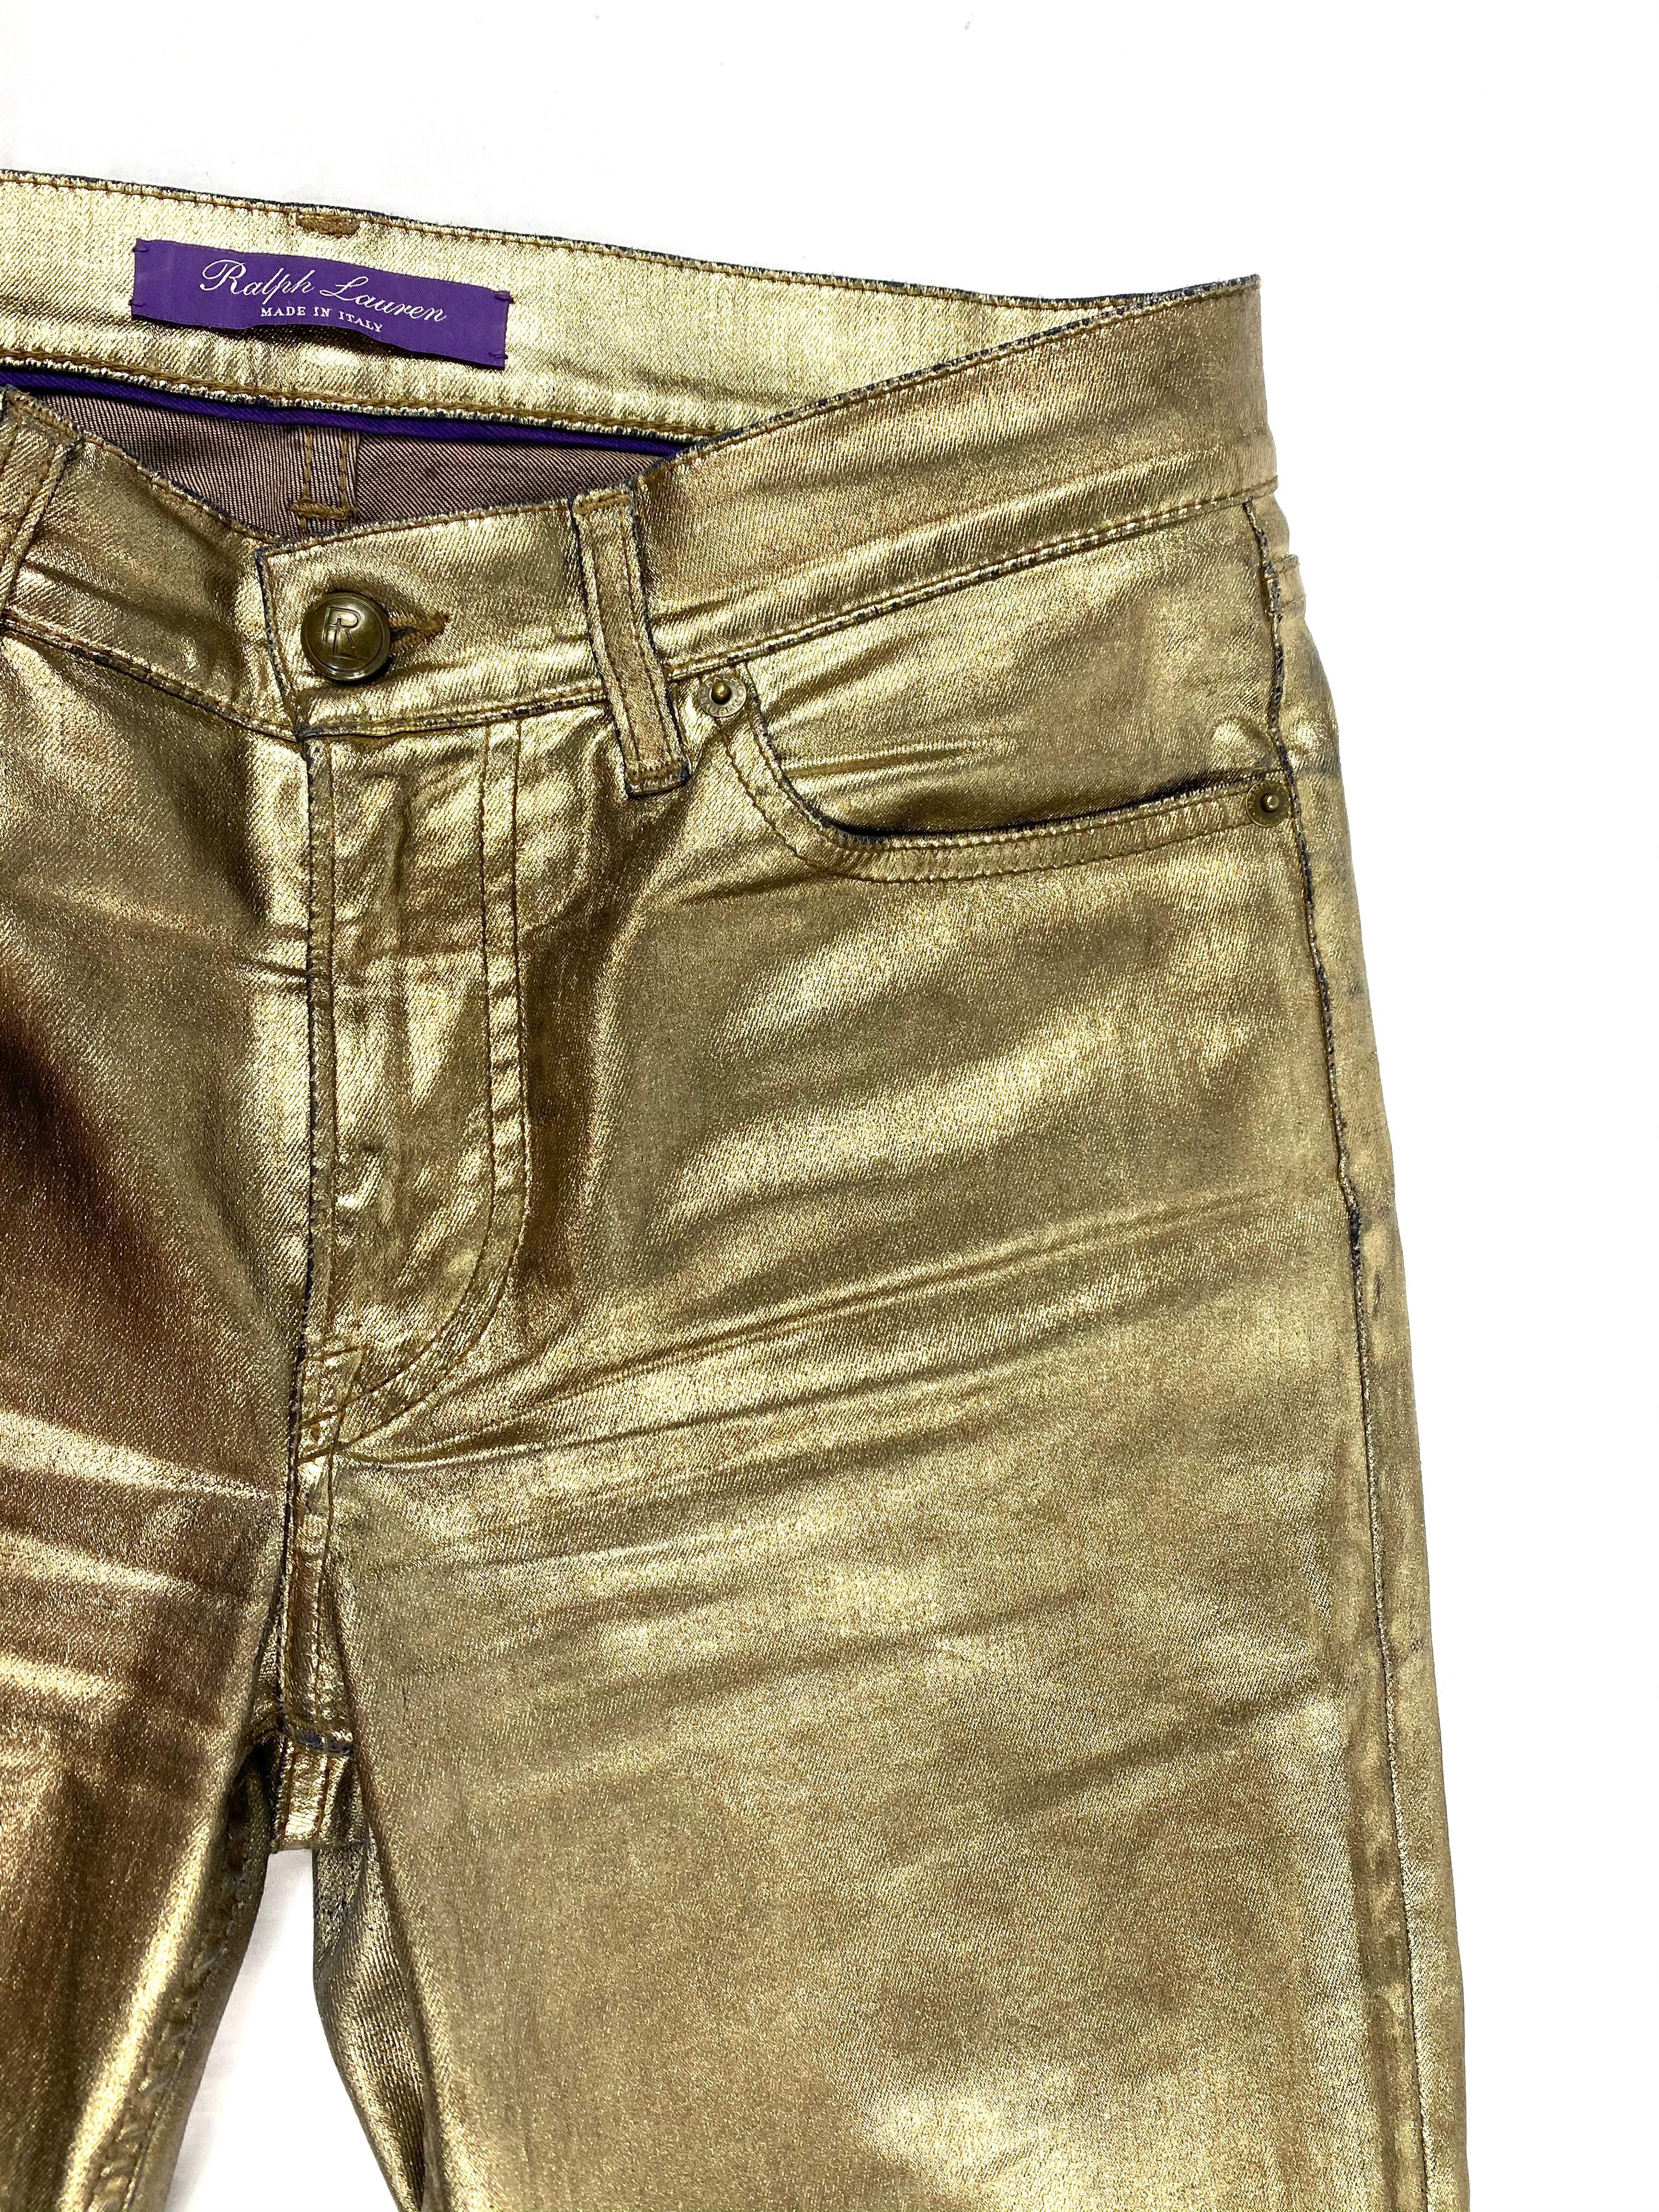 Ralph Lauren Gold Metallic Jeanshose aus Baumwolle Größe 28 für Damen oder Herren